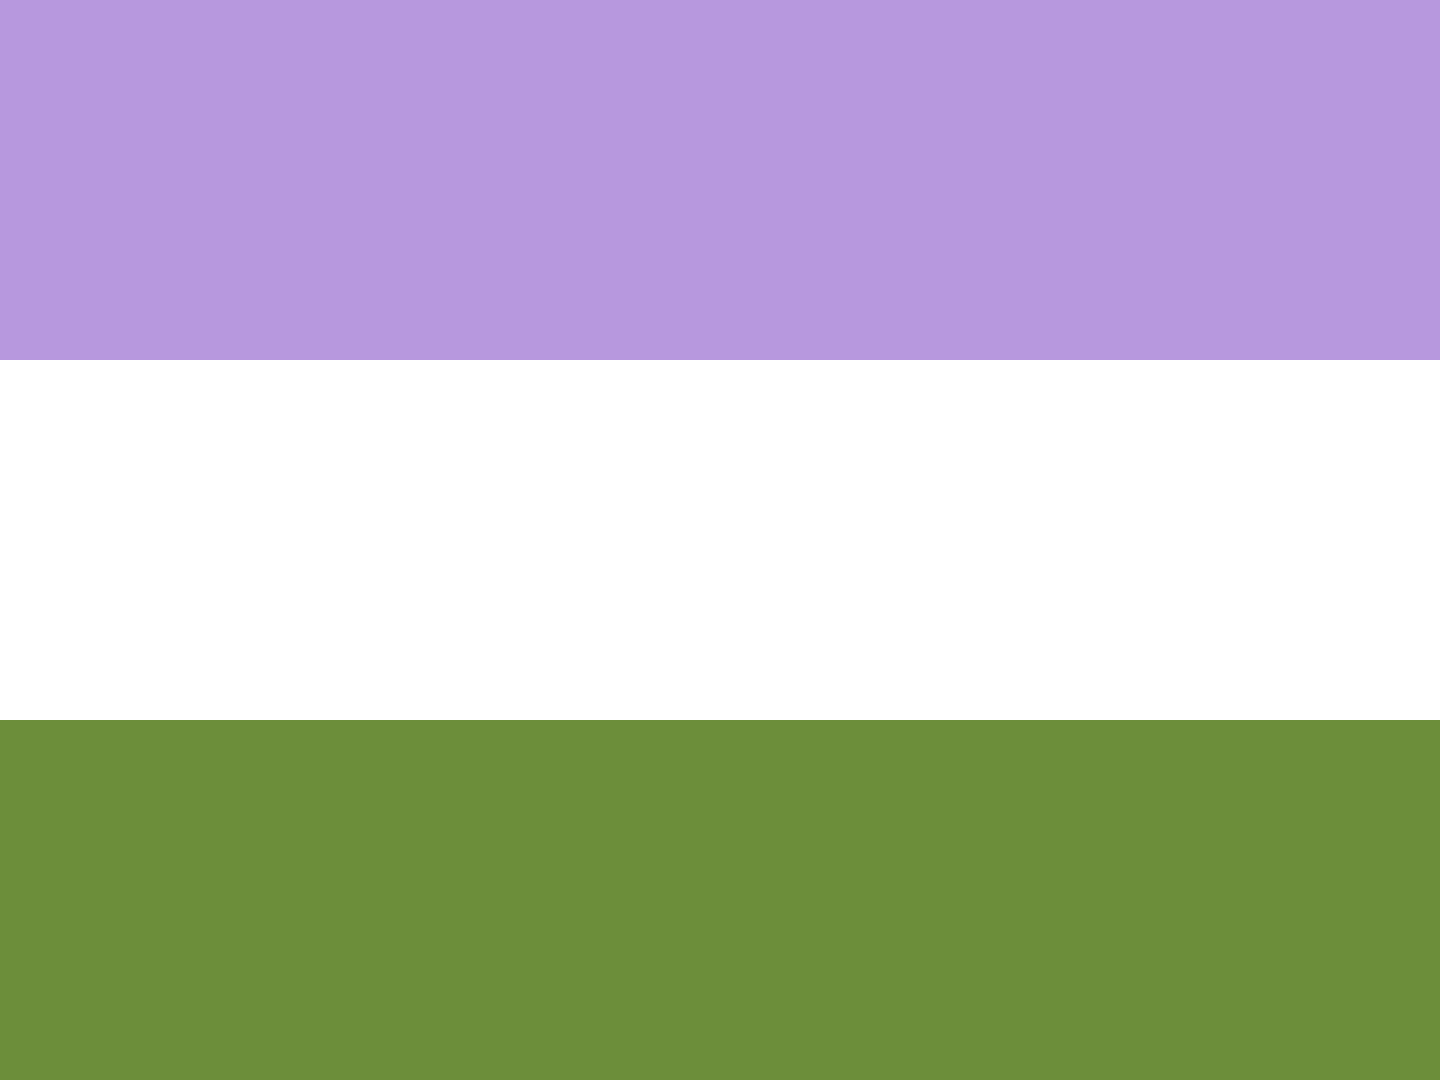 violetti-valkea-vihreä